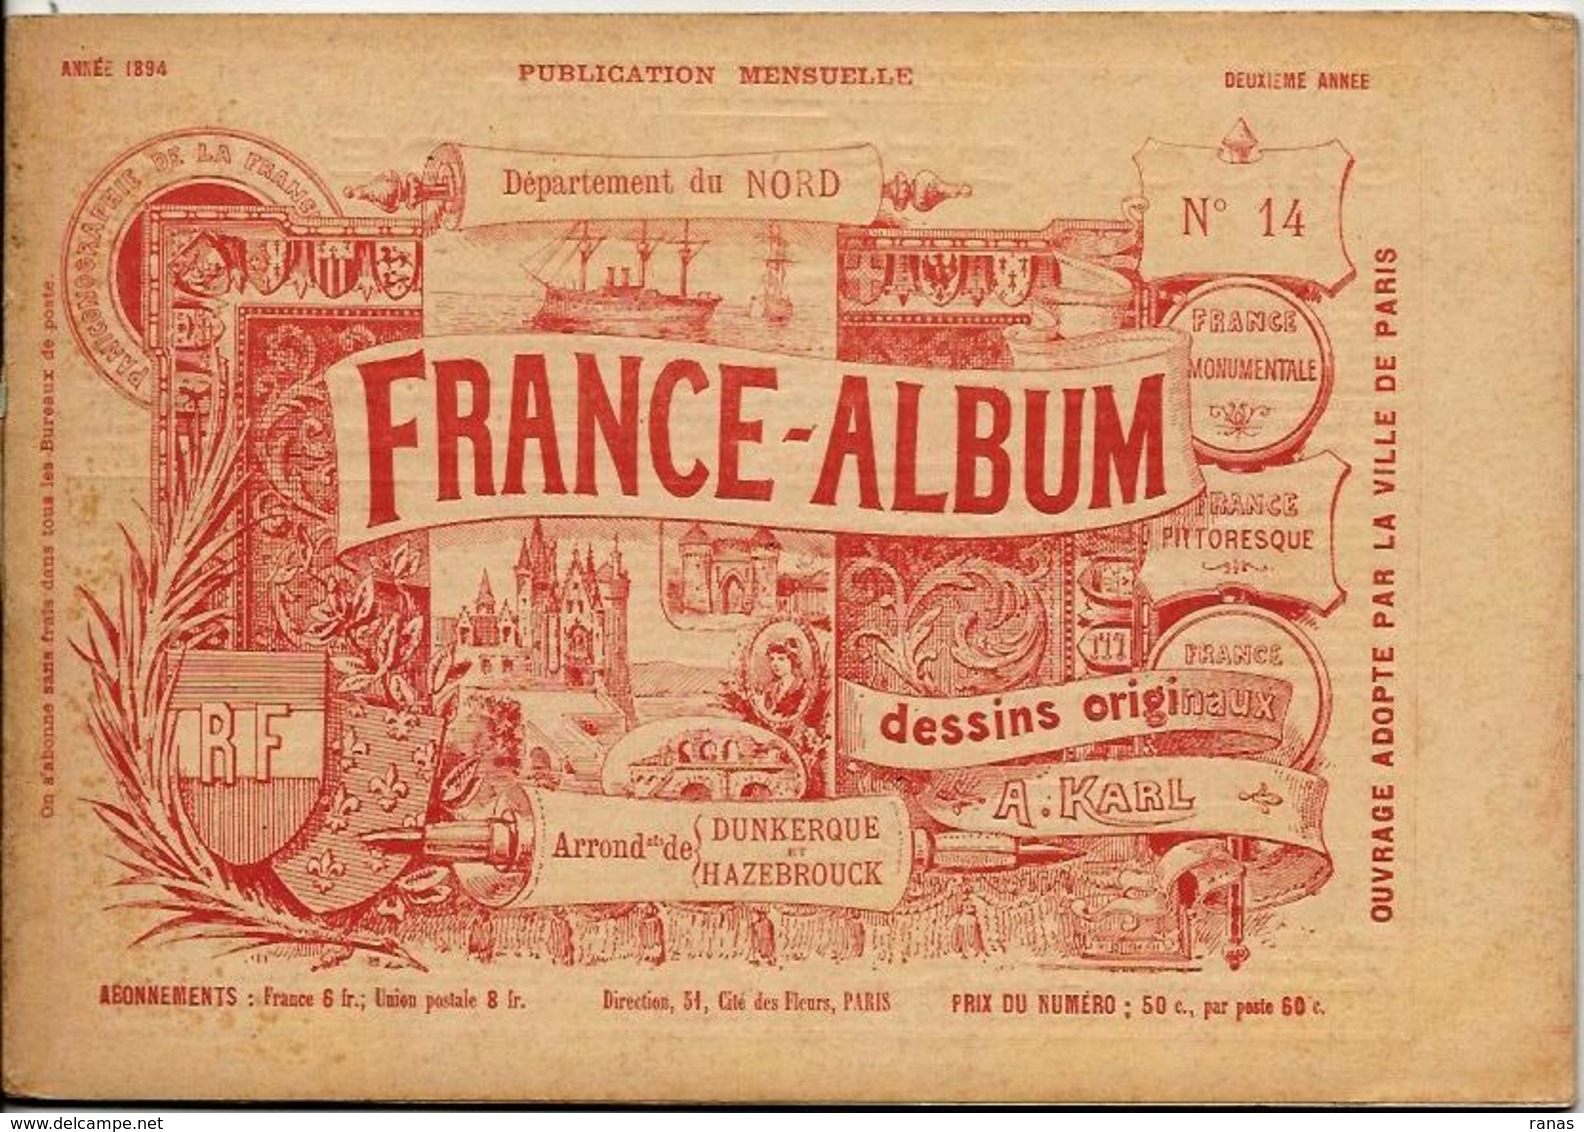 NORD 59 France Album De A. KARL, Carte Gravures Texte Publicités 1894 - Tourism Brochures